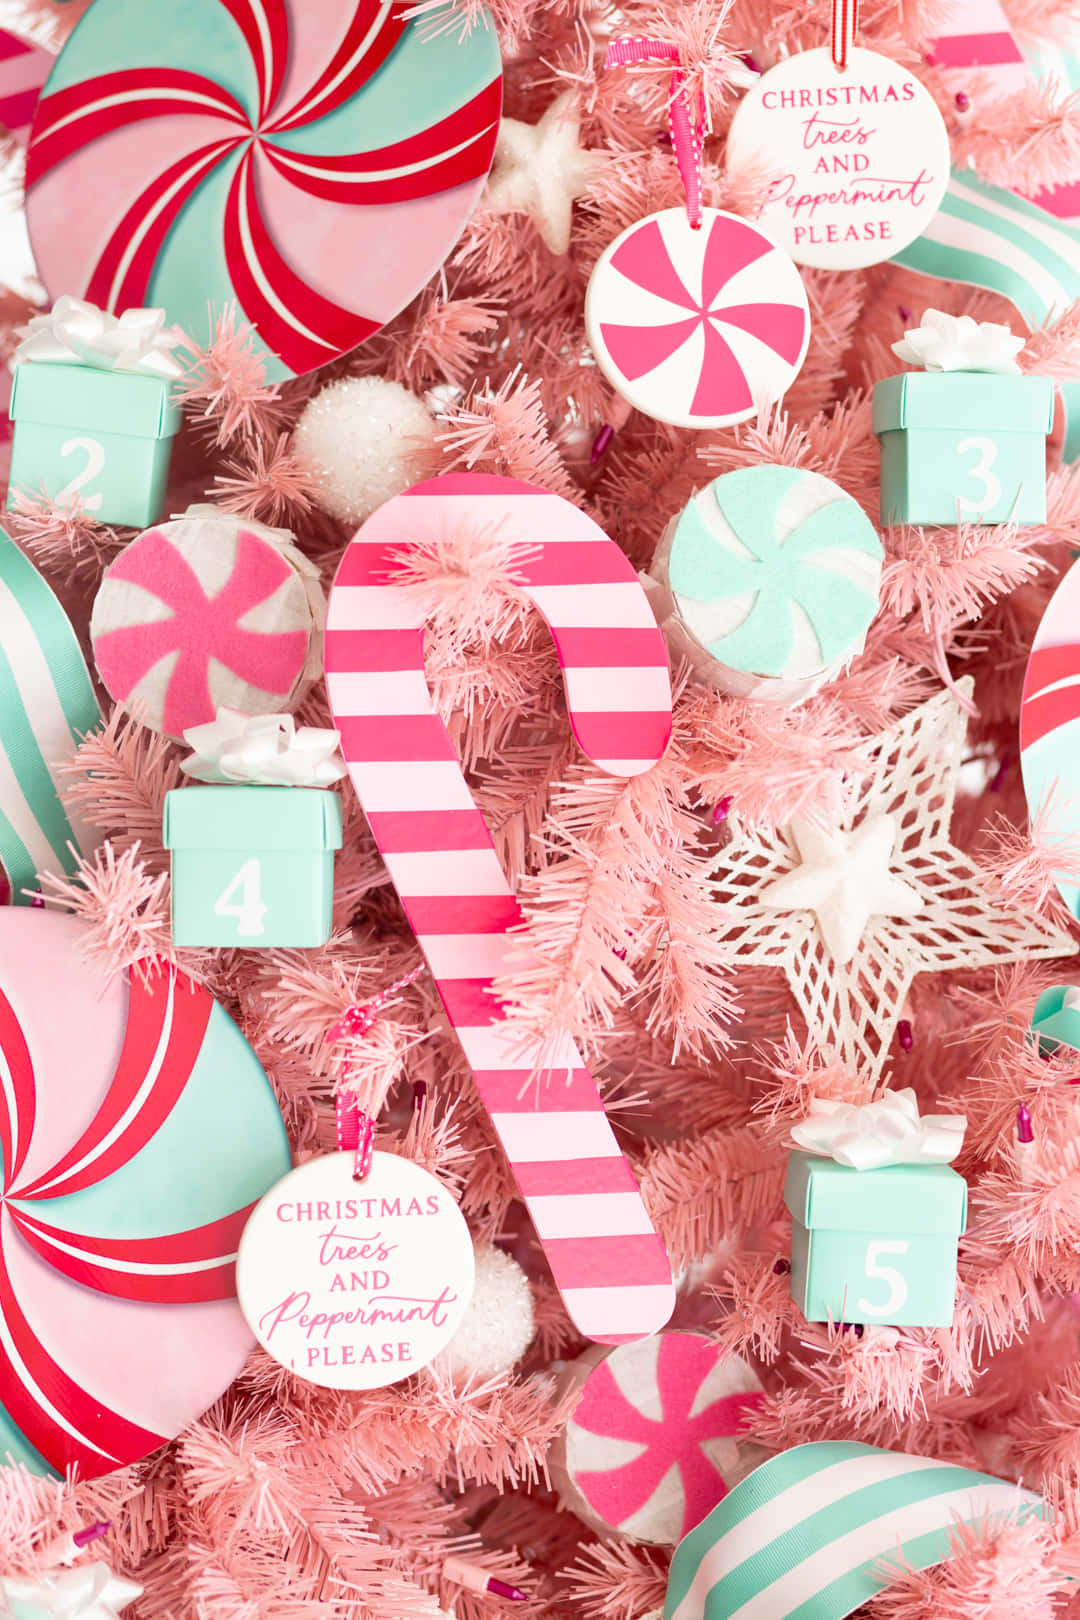 Fejr højtiderne på en festlig og sjov måde med denne charmerende pink juletræ. Wallpaper